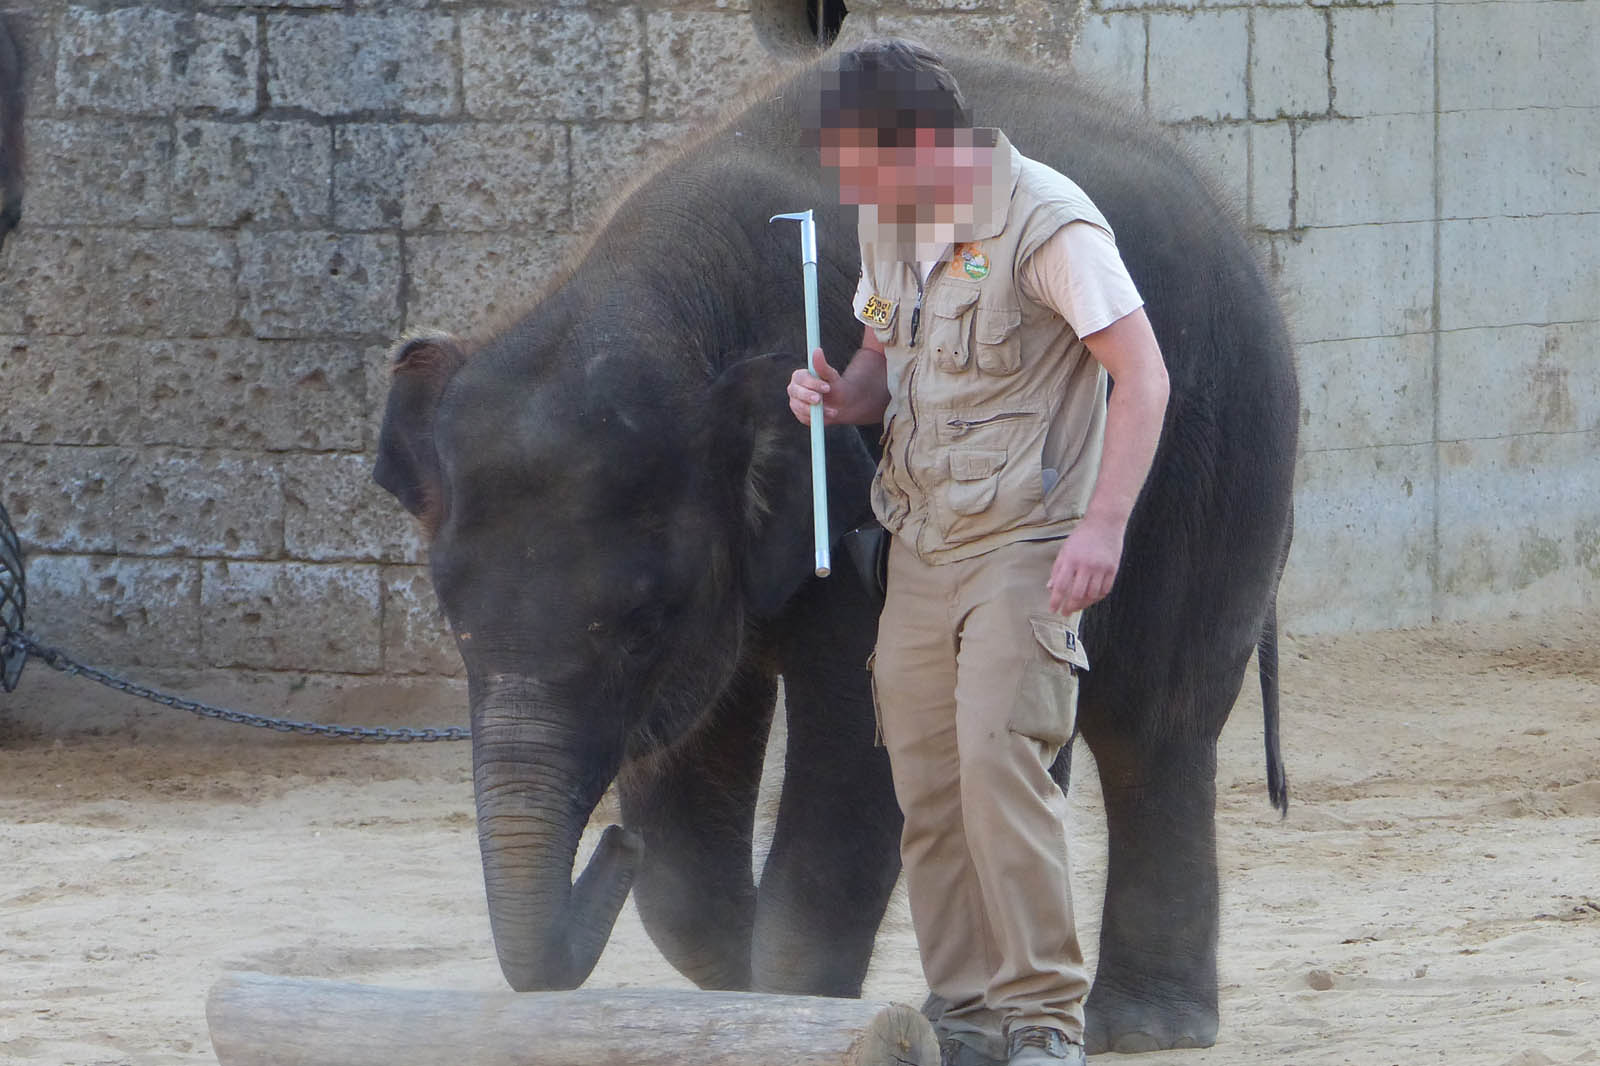 Zoopfleger mit Elefantenhaken in der Hand